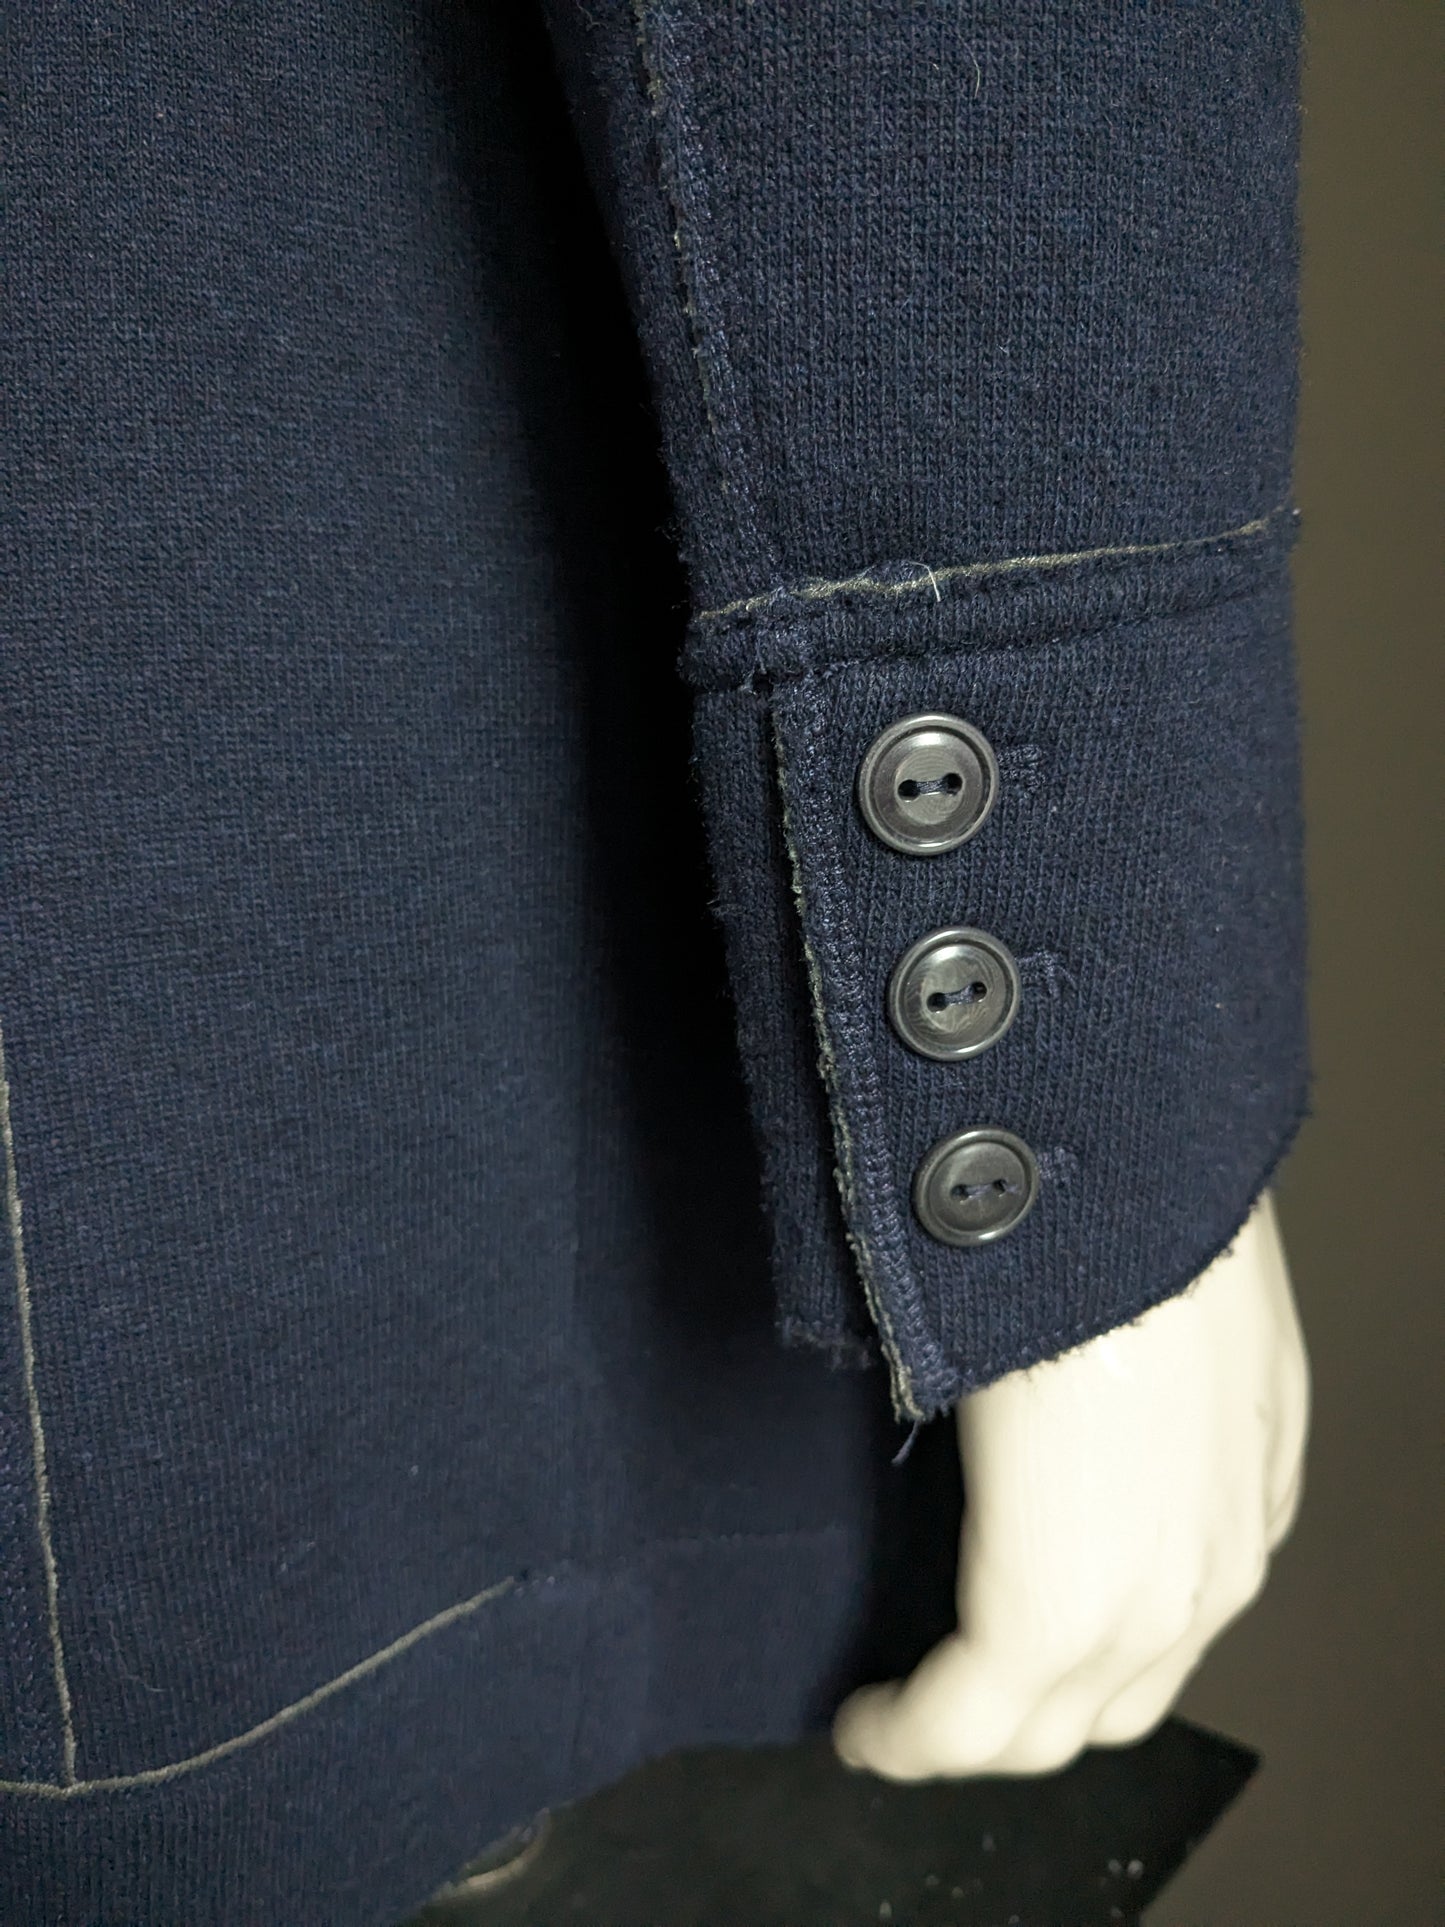 Lana di mezza lunghezza di Marc O'Polo tra la giacca con bottoni. Colorato blu scuro. Taglia 50 / M.